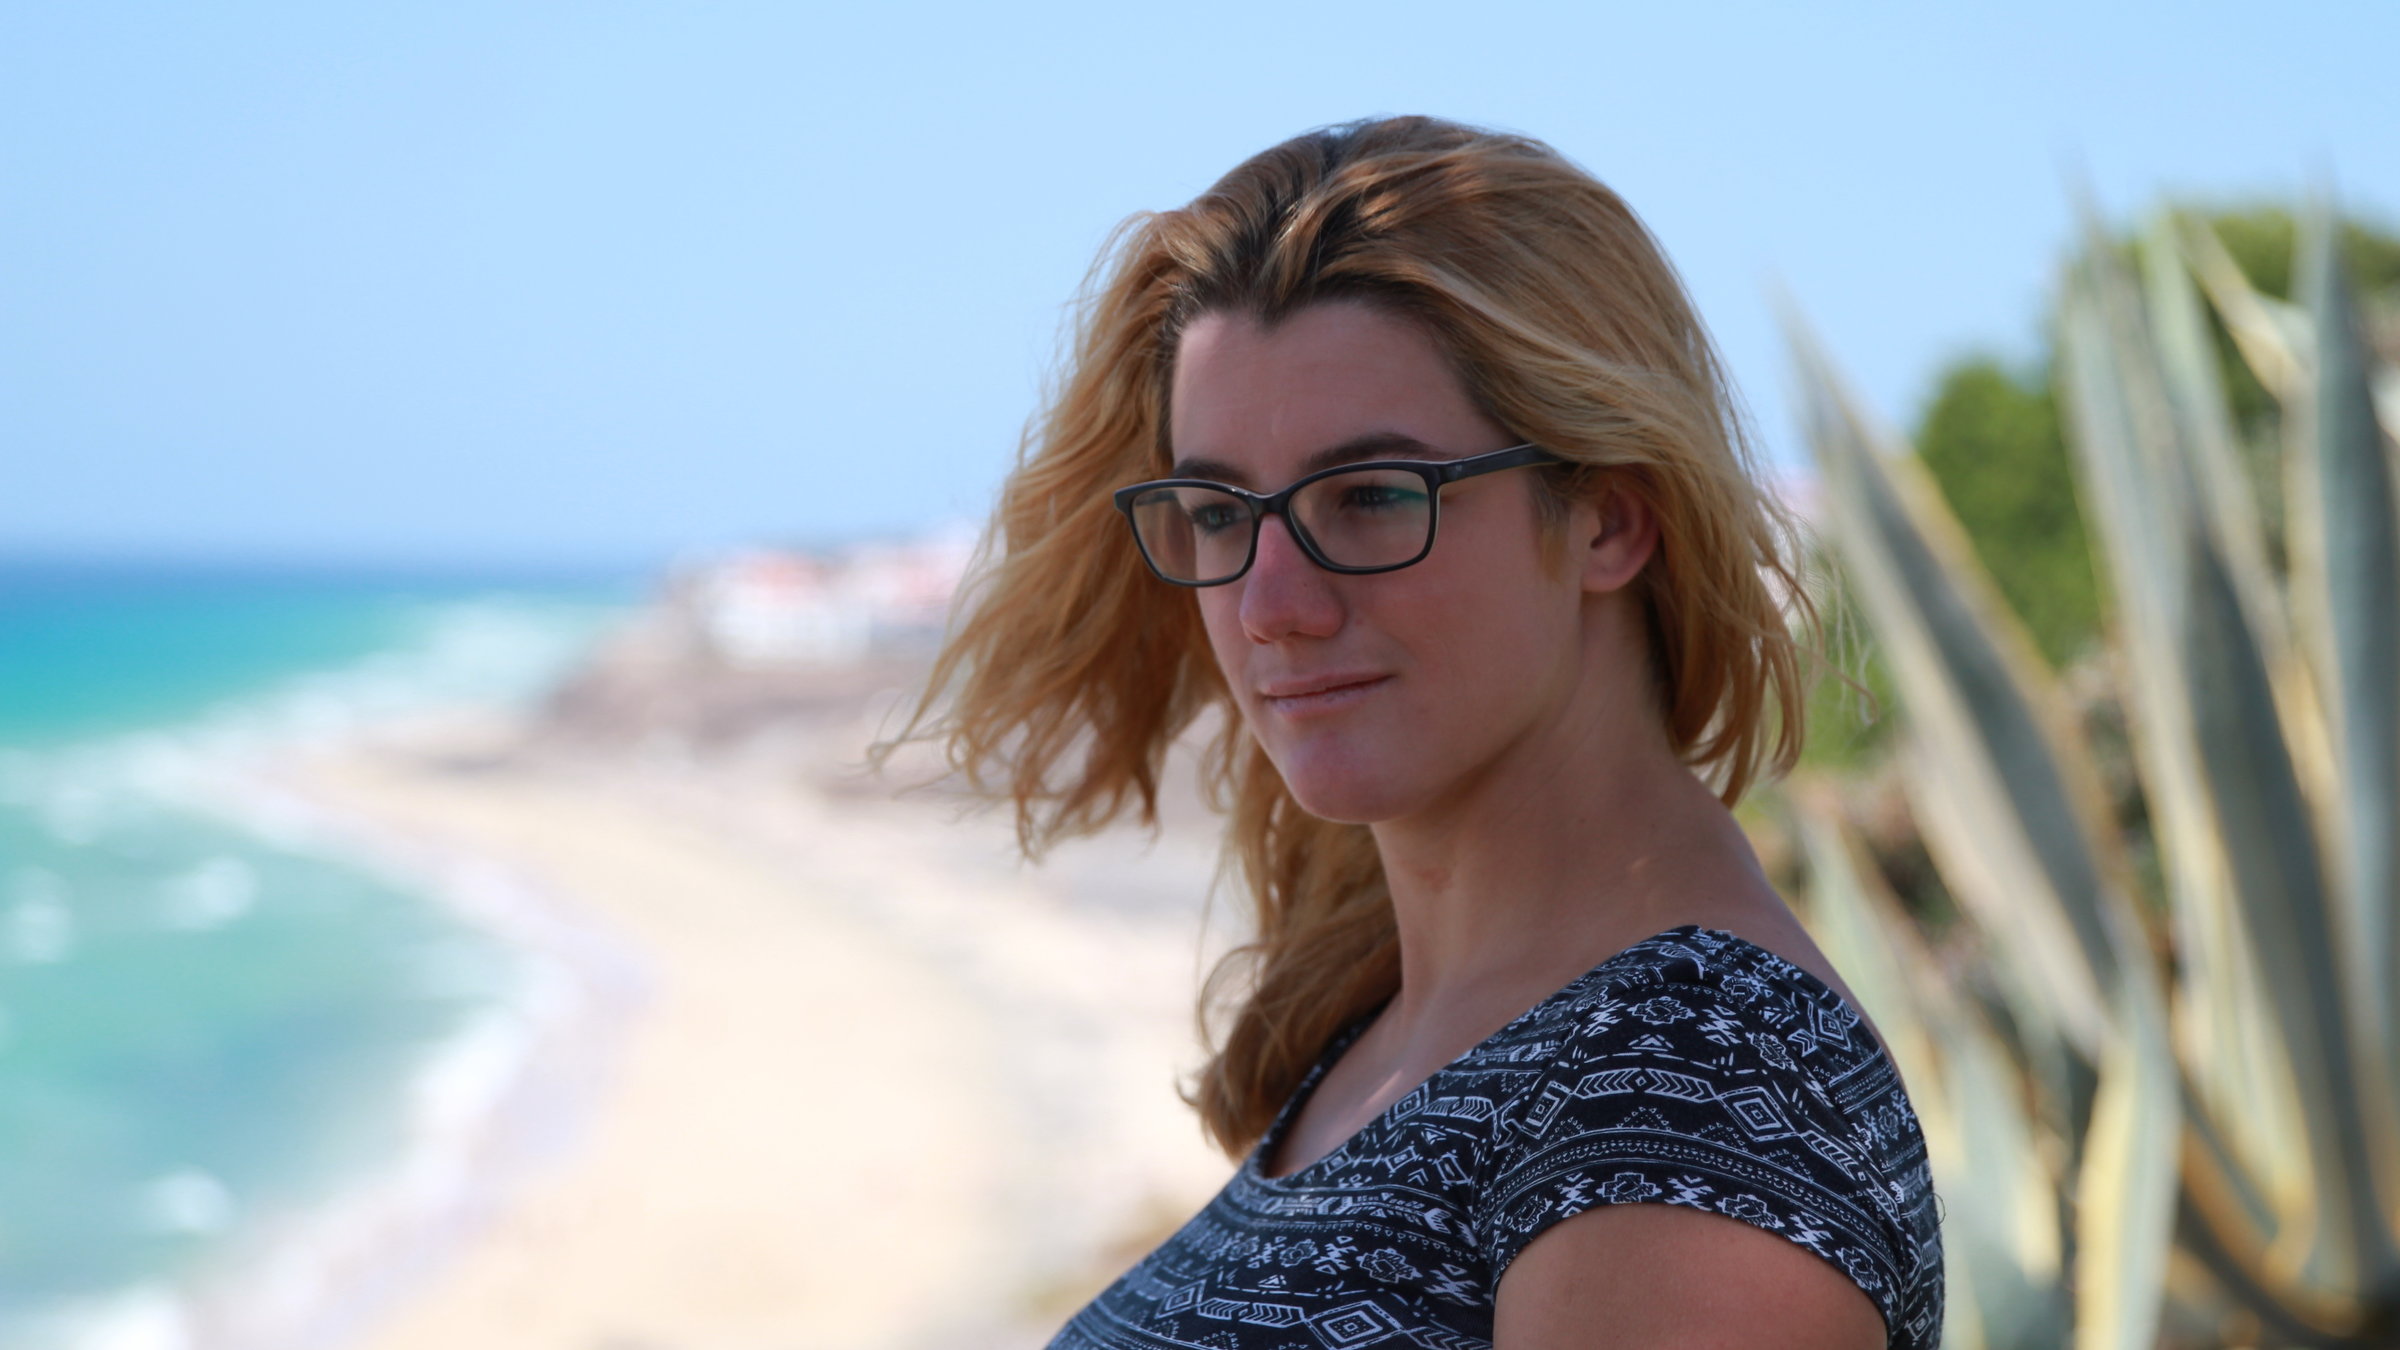 "37°: Ich lebe positiv - Corinne und ihr Schicksal HIV":  Corinne steht an einem gelben Sandstrand. Das Meer ist hellblau und hinter ihr ist eine große Agave zu sehen.